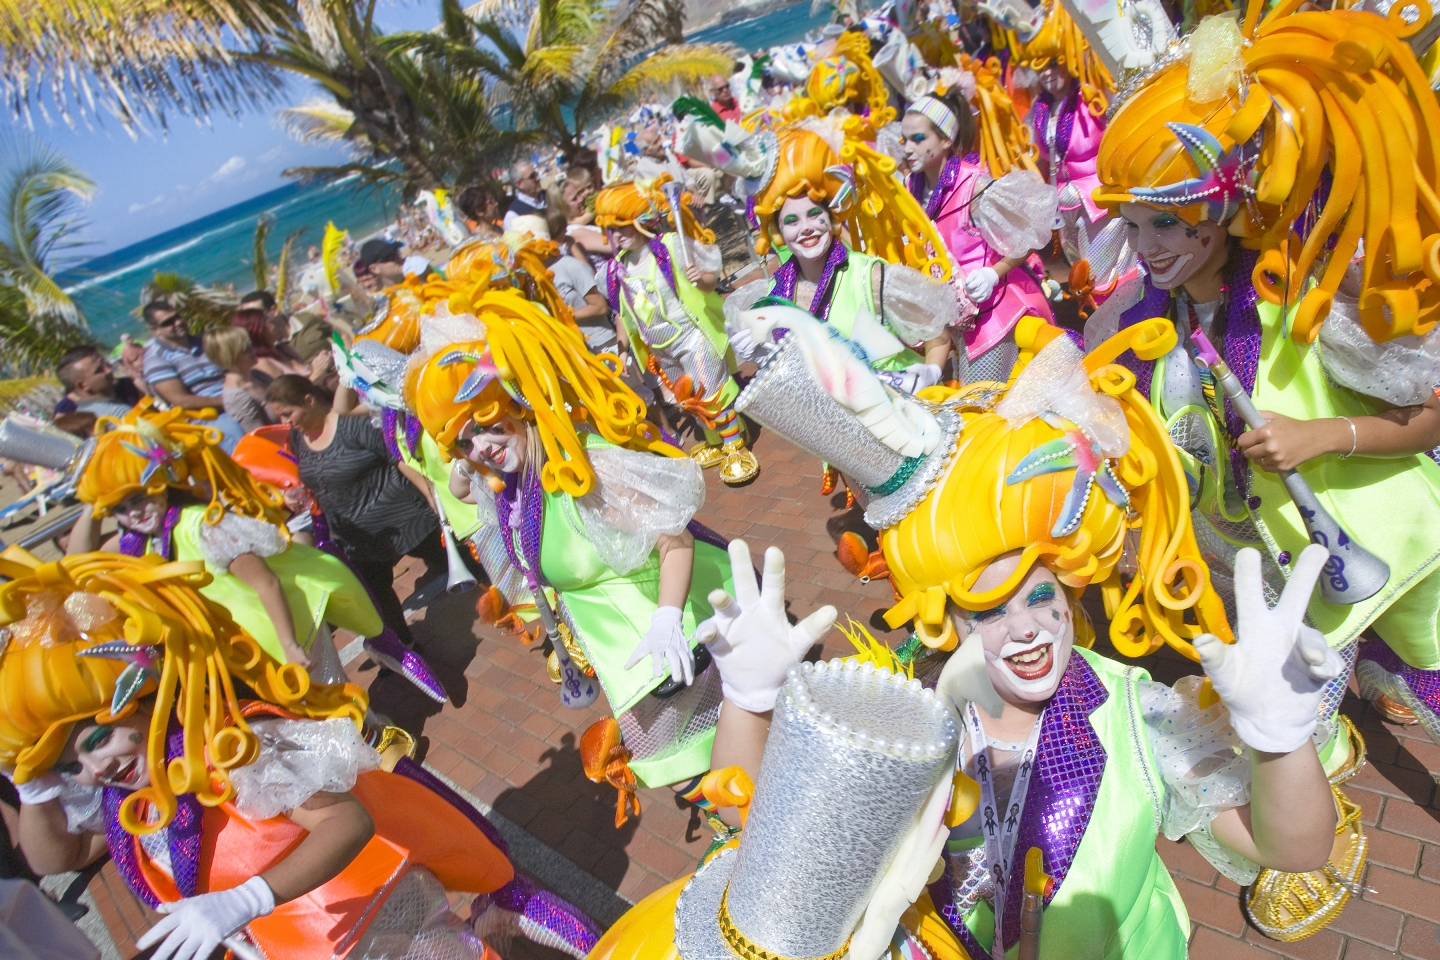 Las Palmas carnival on the beachfront